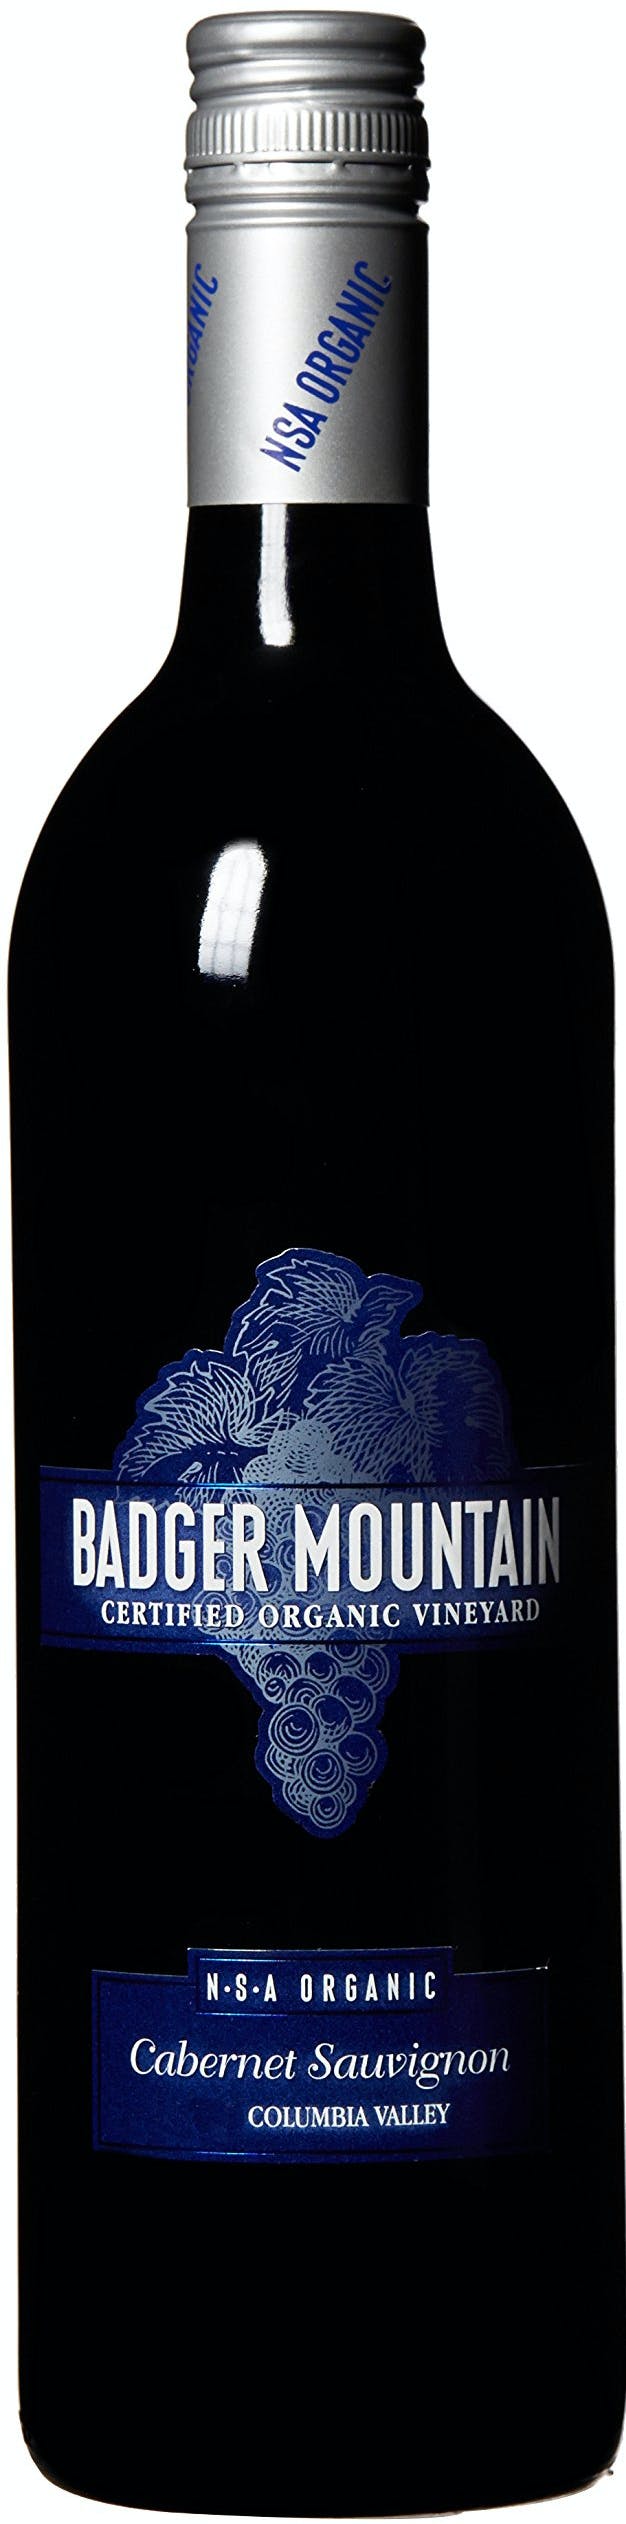 Badger Mountain Cabernet Sauvignon NSA 2020